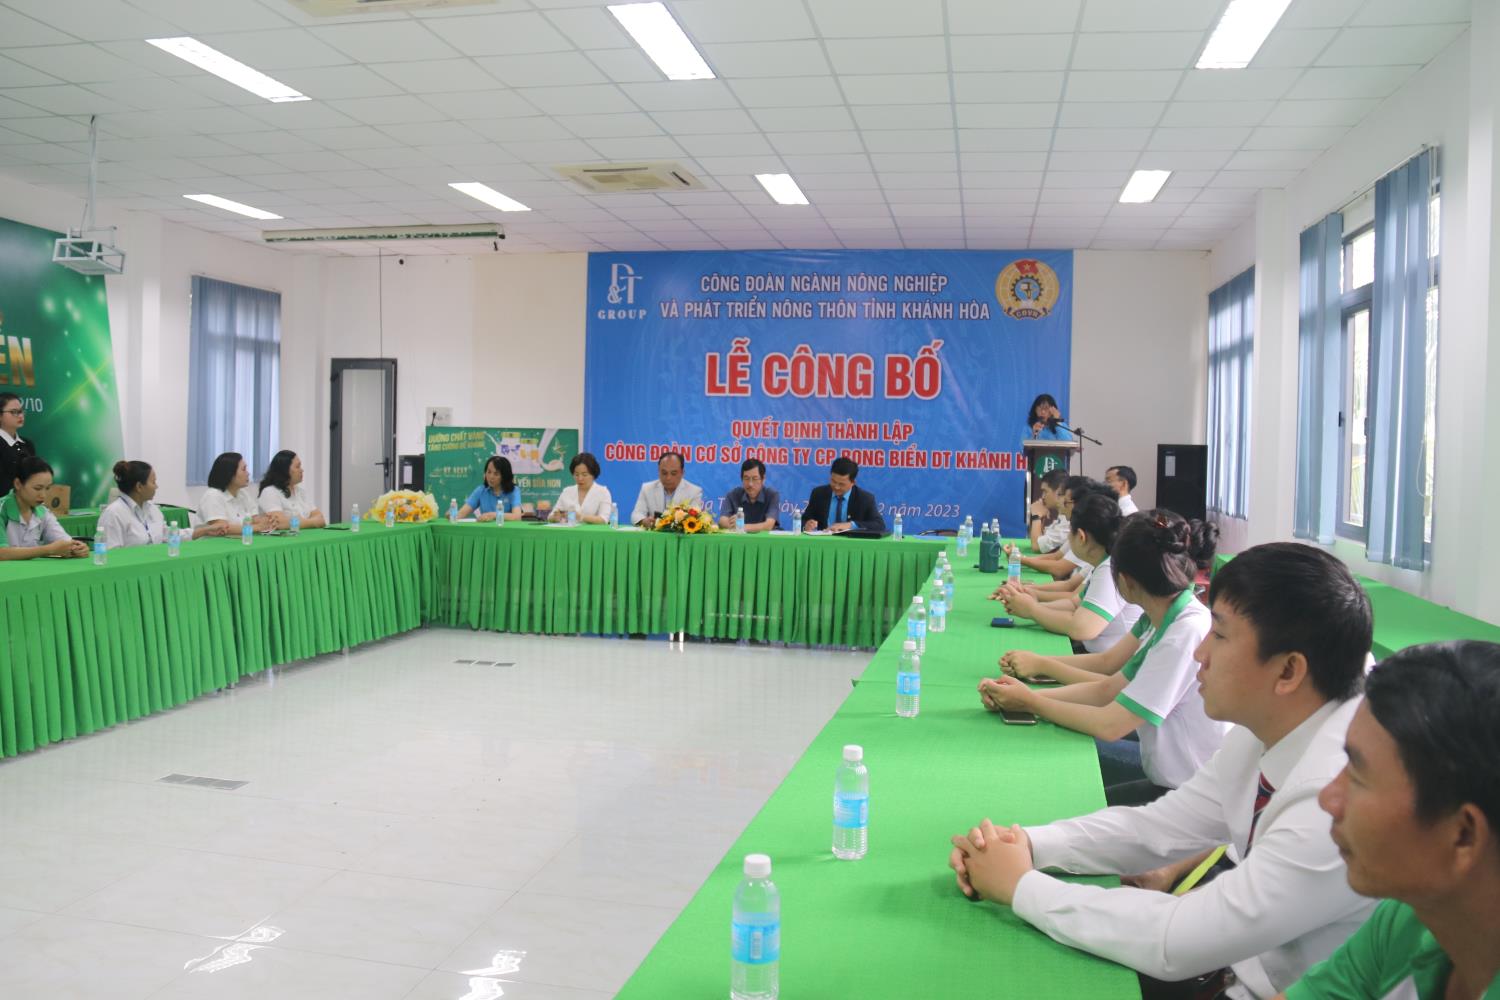 Công ty CP Rong biển DT Khánh Hòa công bố thành lập Công đoàn cơ sở. Ảnh: P.Linh